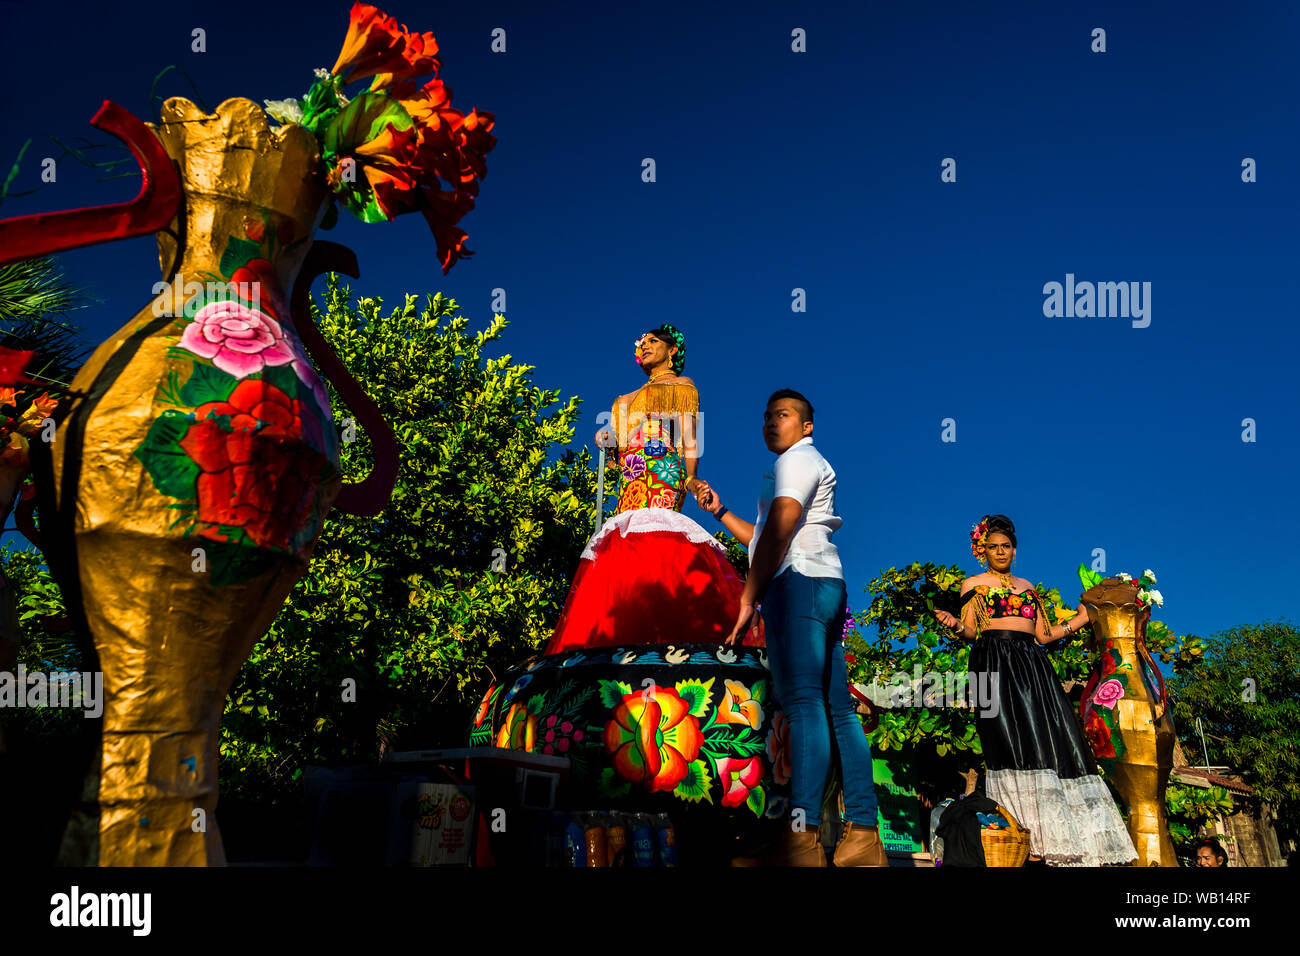 Un Mexicain "muxe" (typiquement, un homosexuel homme portant les vêtements féminins) effectue sur un flotteur pendant le festival à Juchitán de Zaragoza, Mexique. Banque D'Images